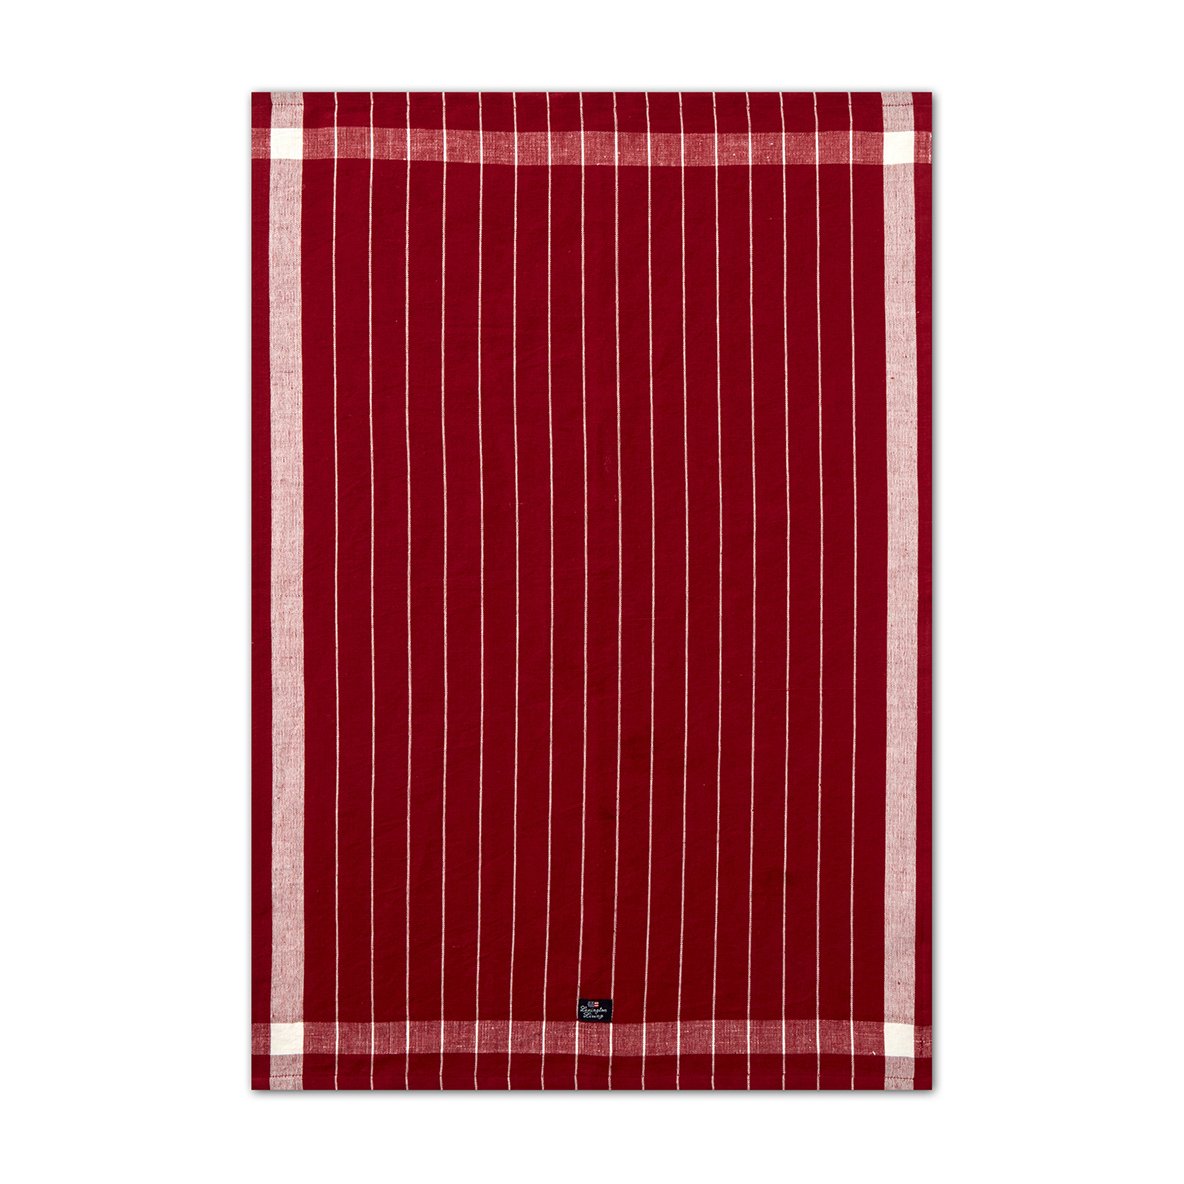 Lexington Linen Cotton Striped -keittiöpyyhe 50 x 70 cm Red-white